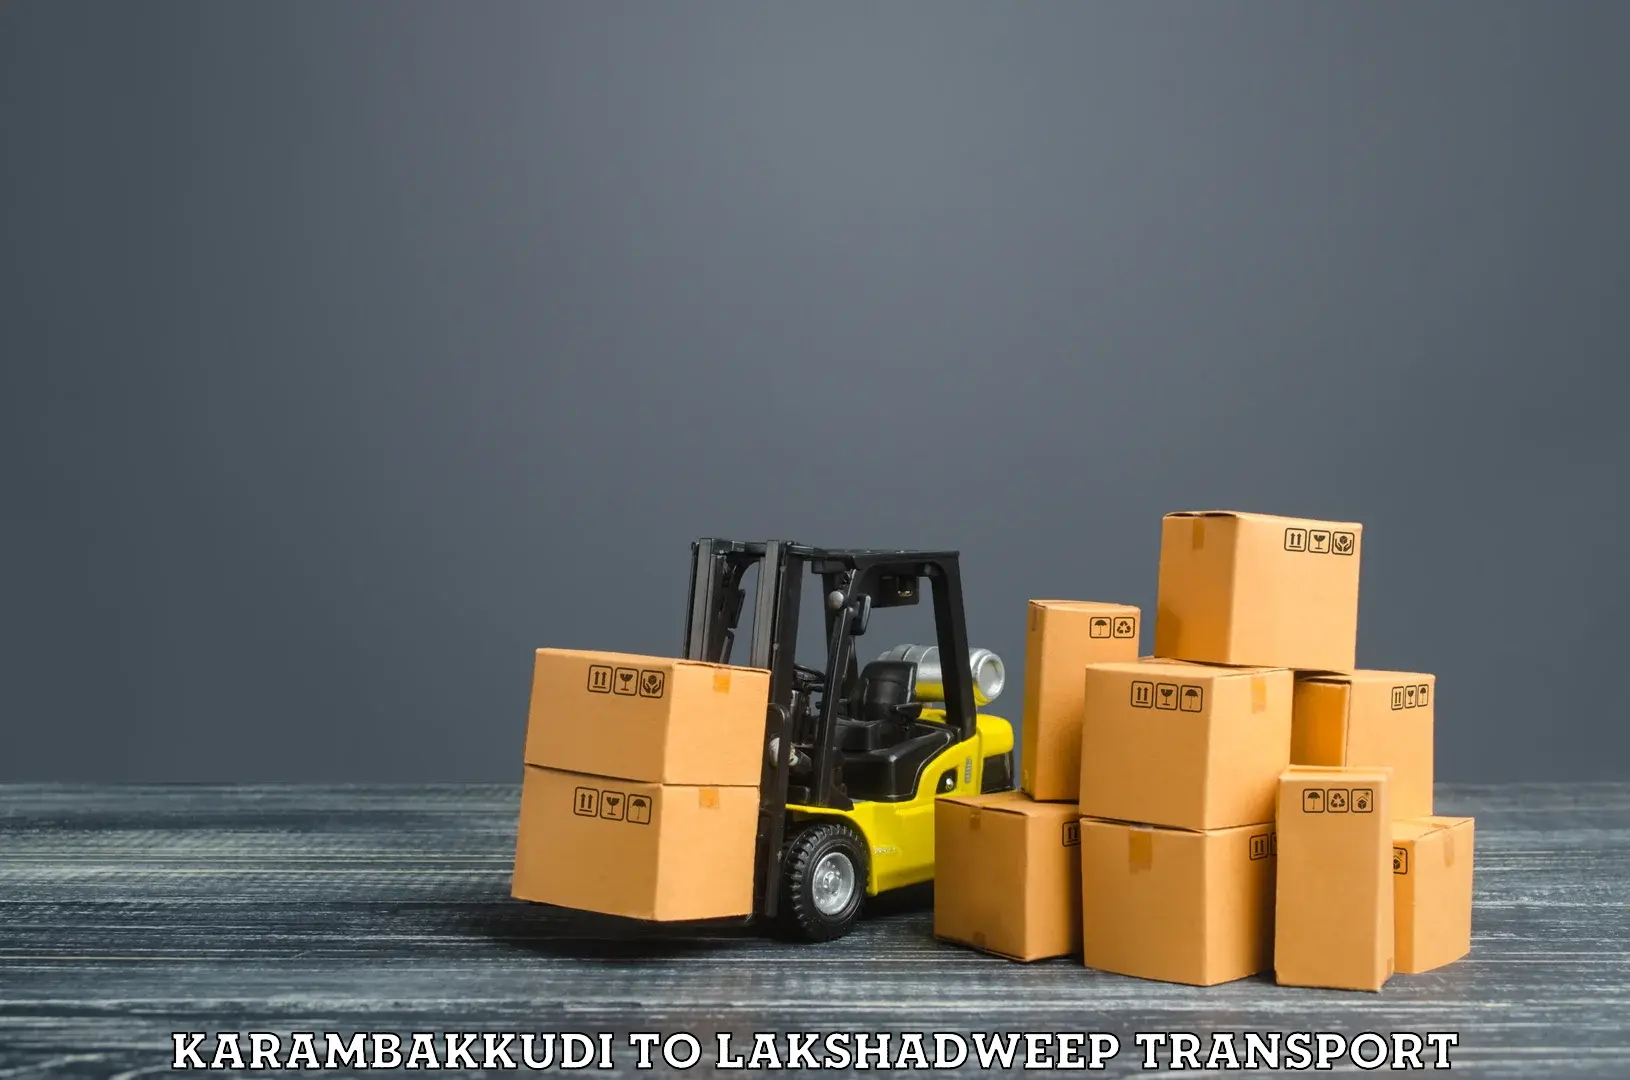 Logistics transportation services Karambakkudi to Lakshadweep